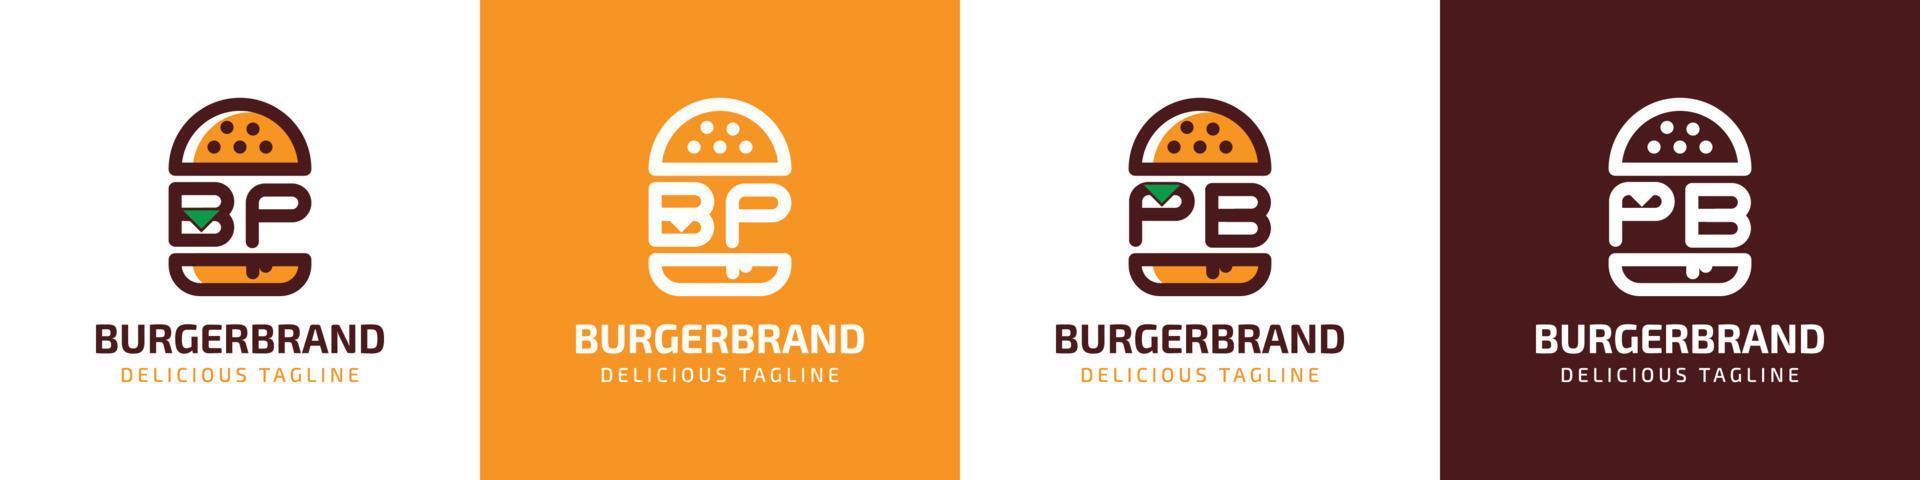 carta bp e pb hamburguer logotipo, adequado para qualquer o negócio relacionado para hamburguer com bp ou pb iniciais. vetor